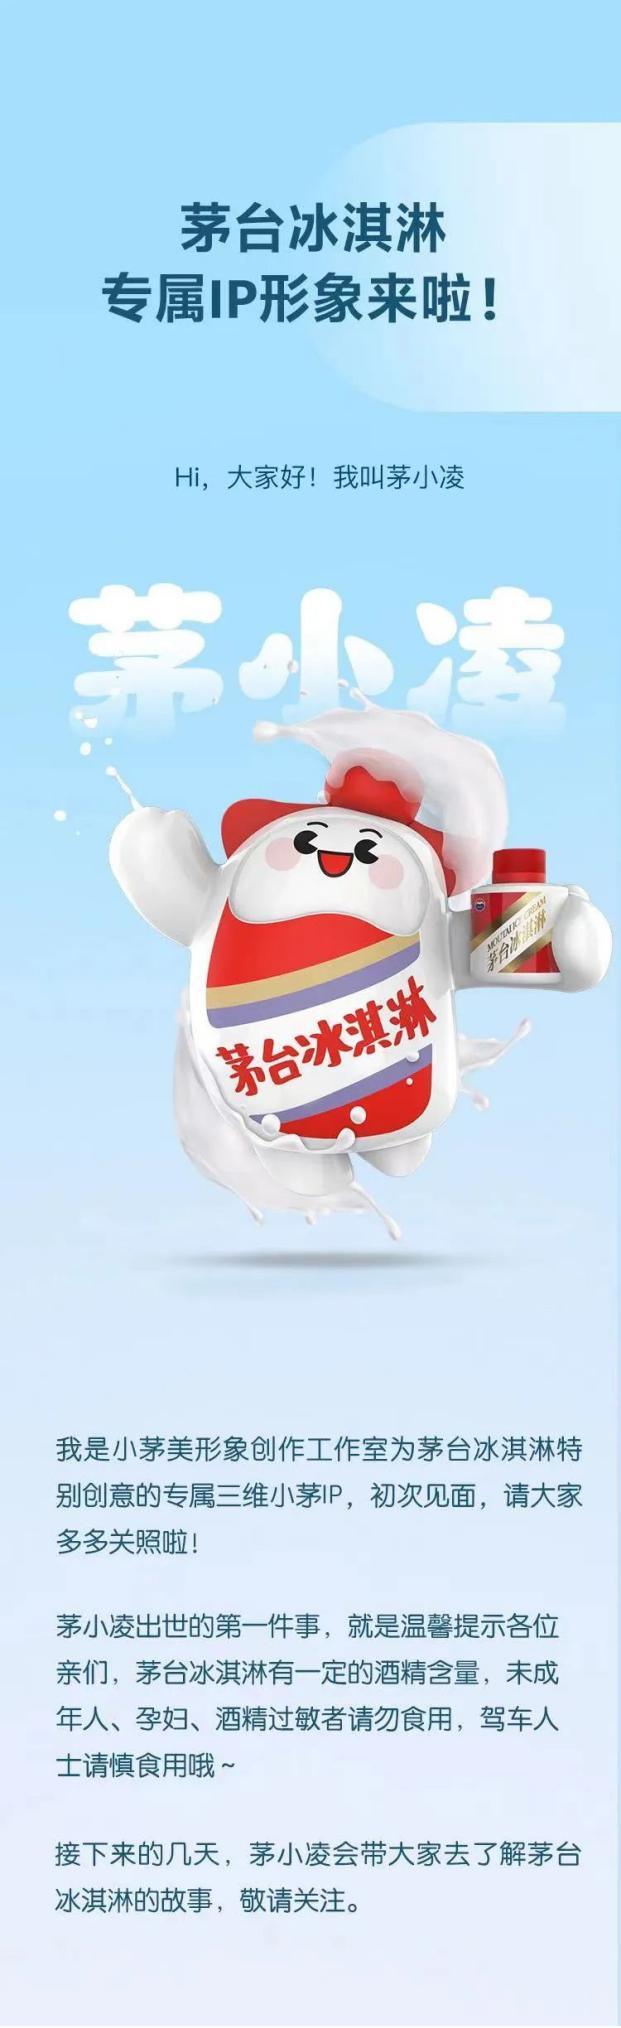 “茅小凌”发布“冰醇之爱只为你”，i茅台即将上线三款冰淇淋产品